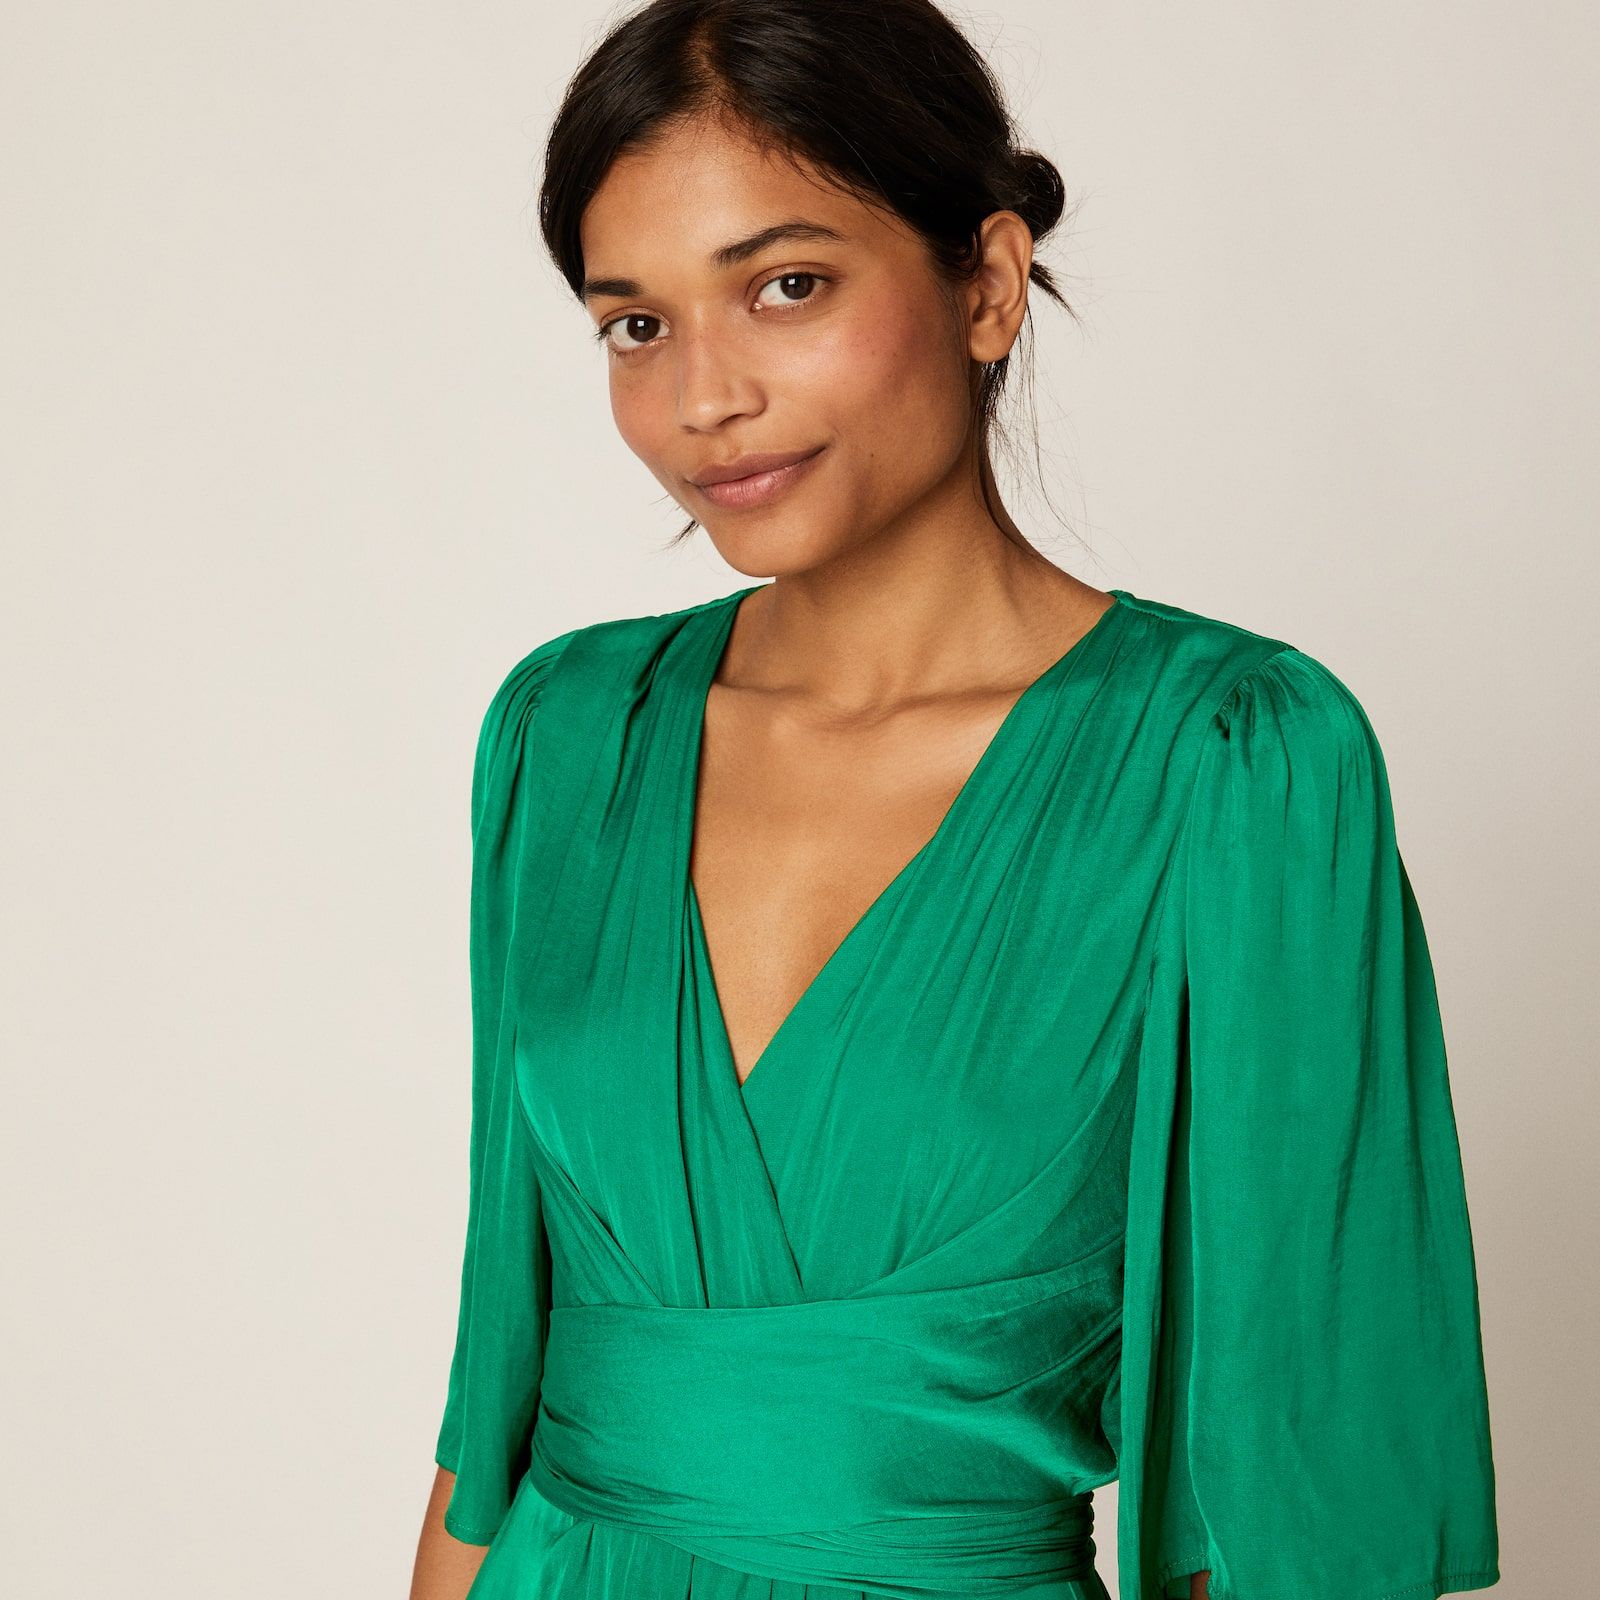 Oysho reedita su vestido verde de su tienda online